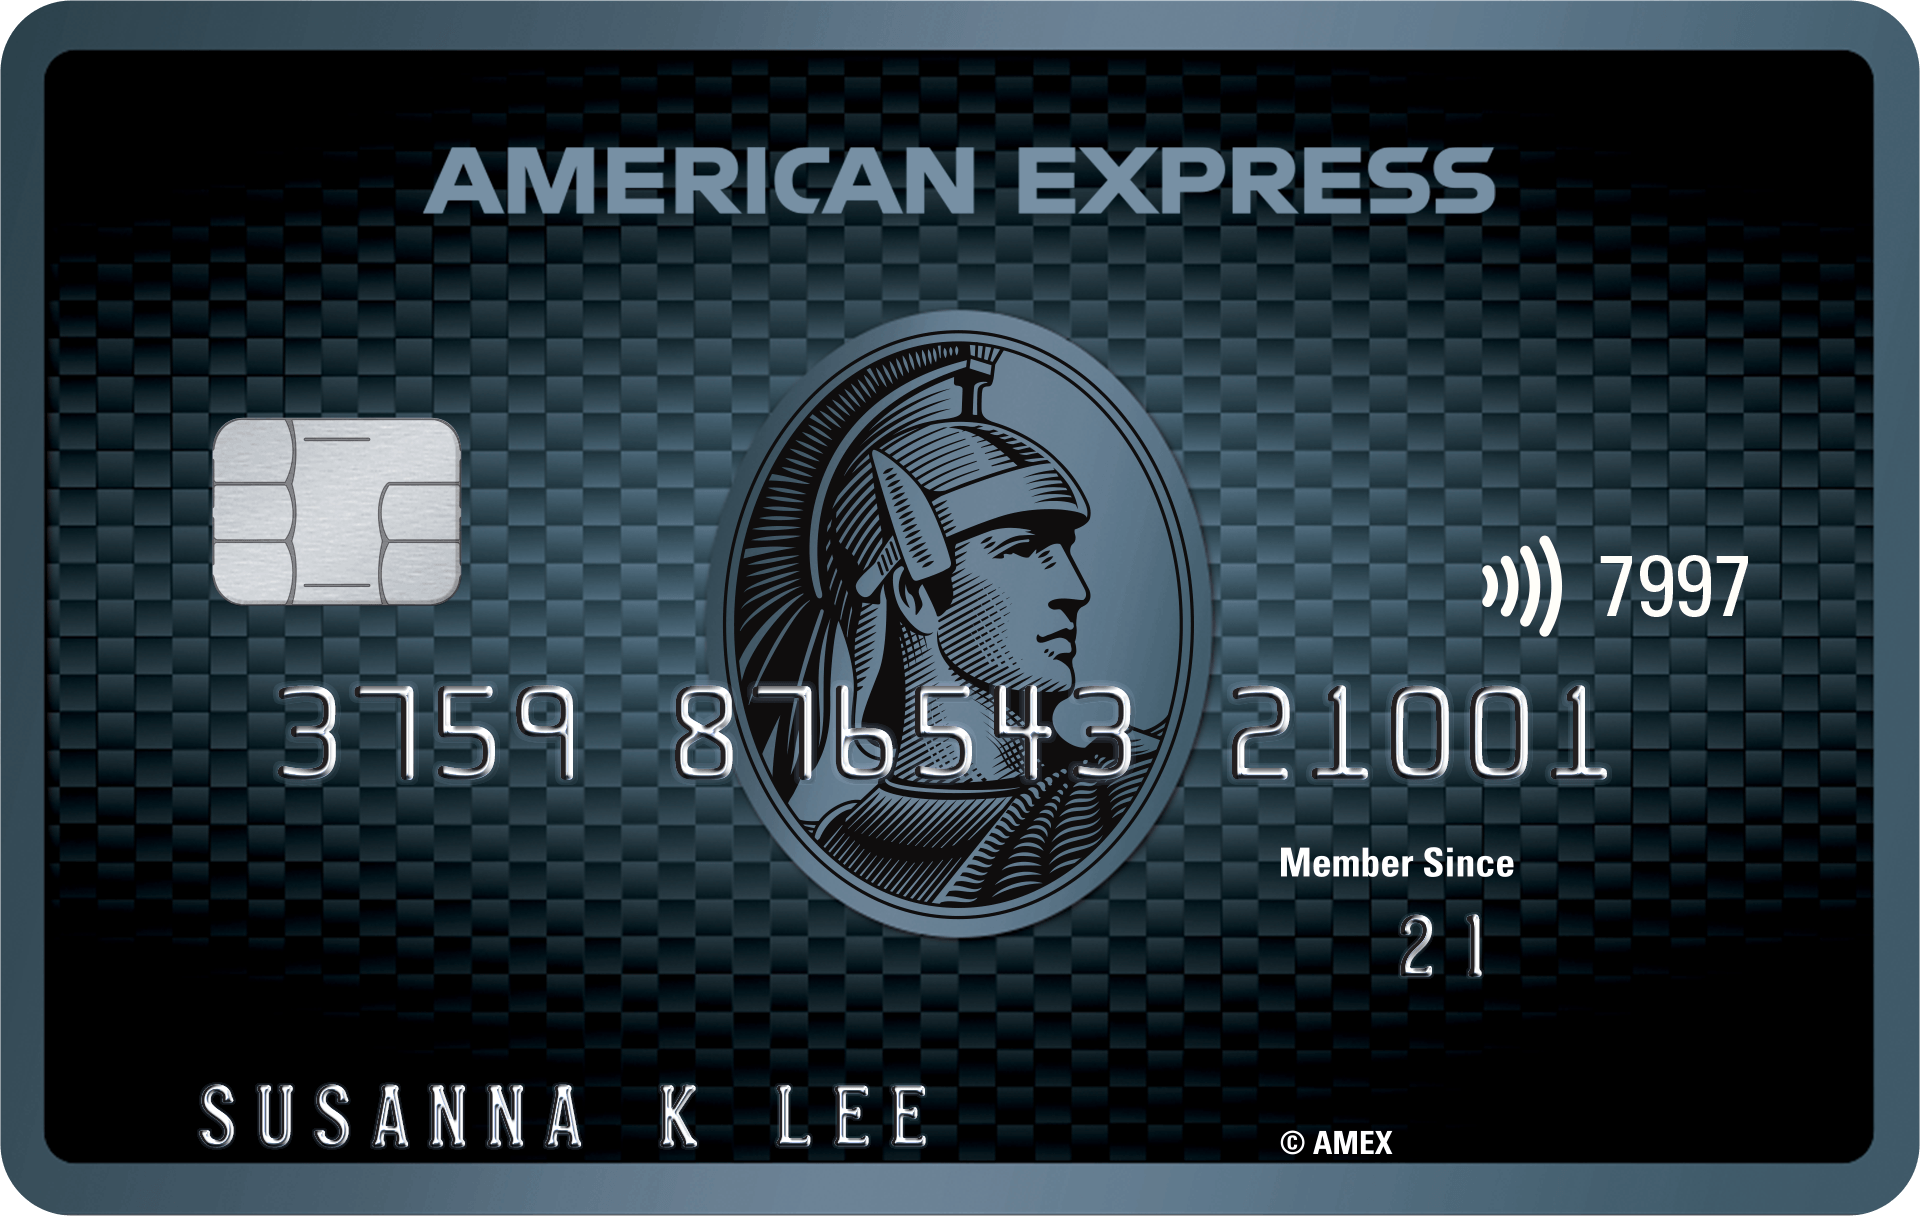 美國運通AE Explorer信用卡: 迎新優惠及年費 2021 | MoneyHero